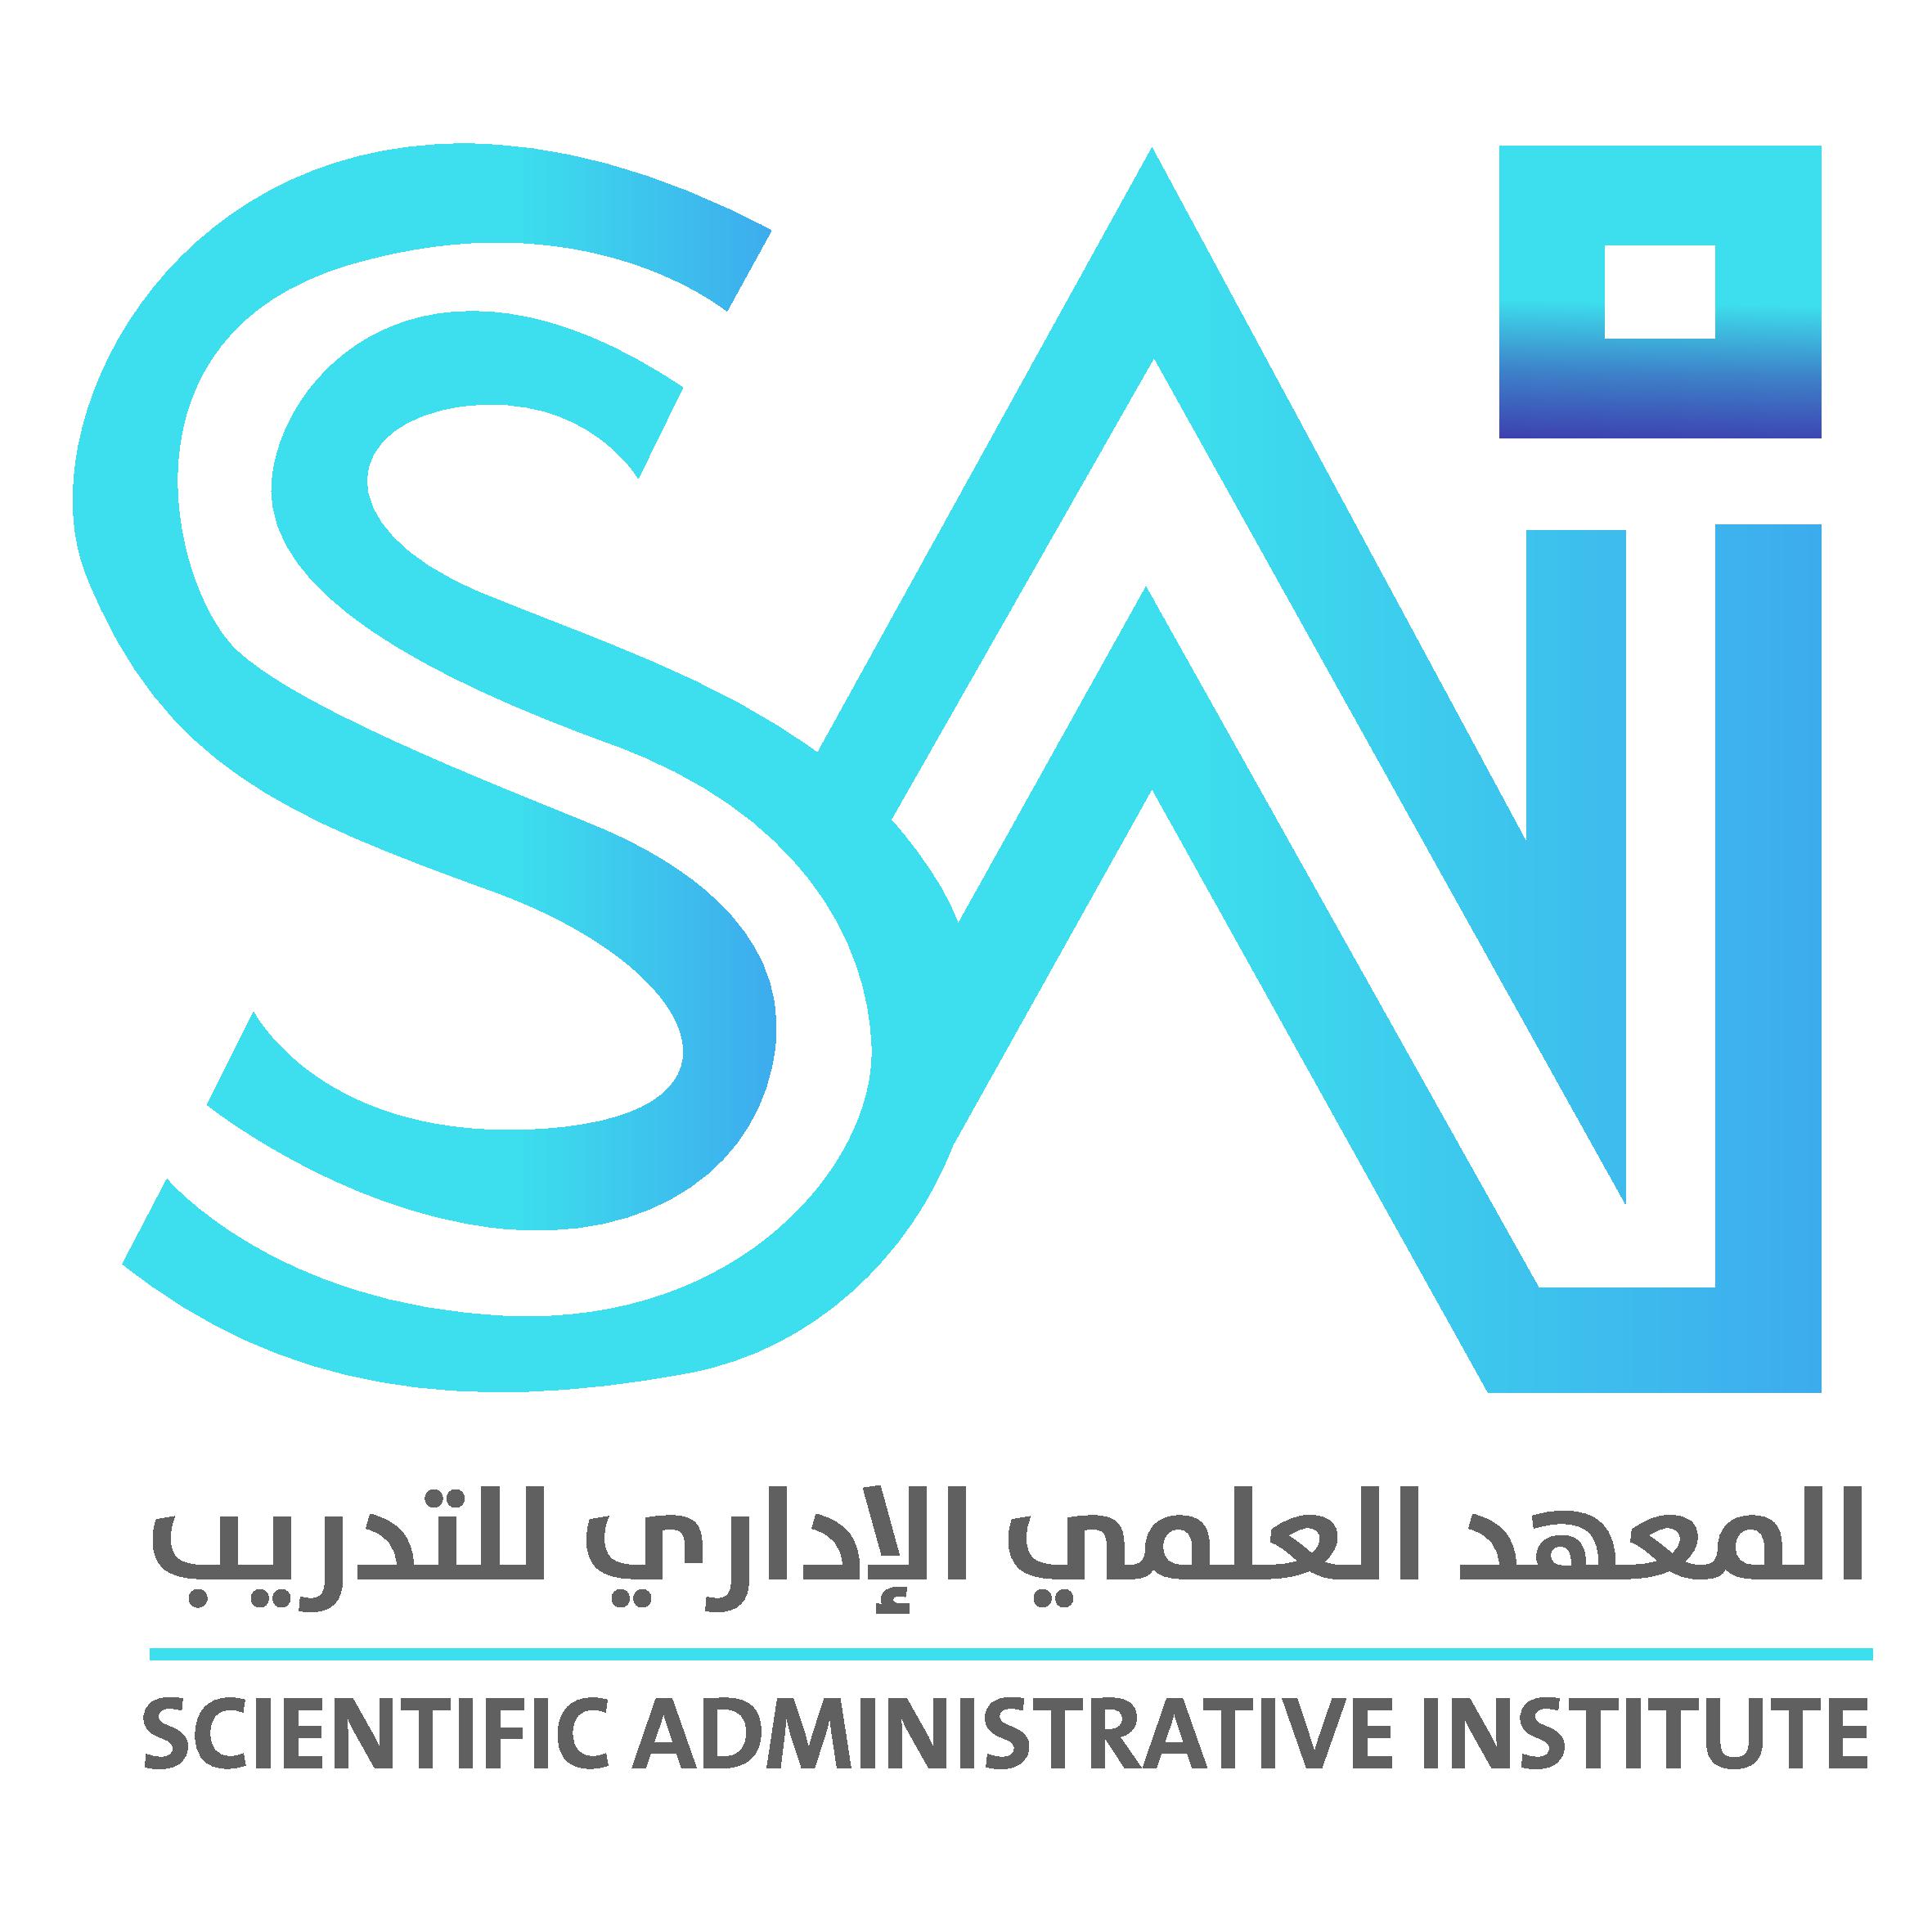 Scientific Administrative Institute